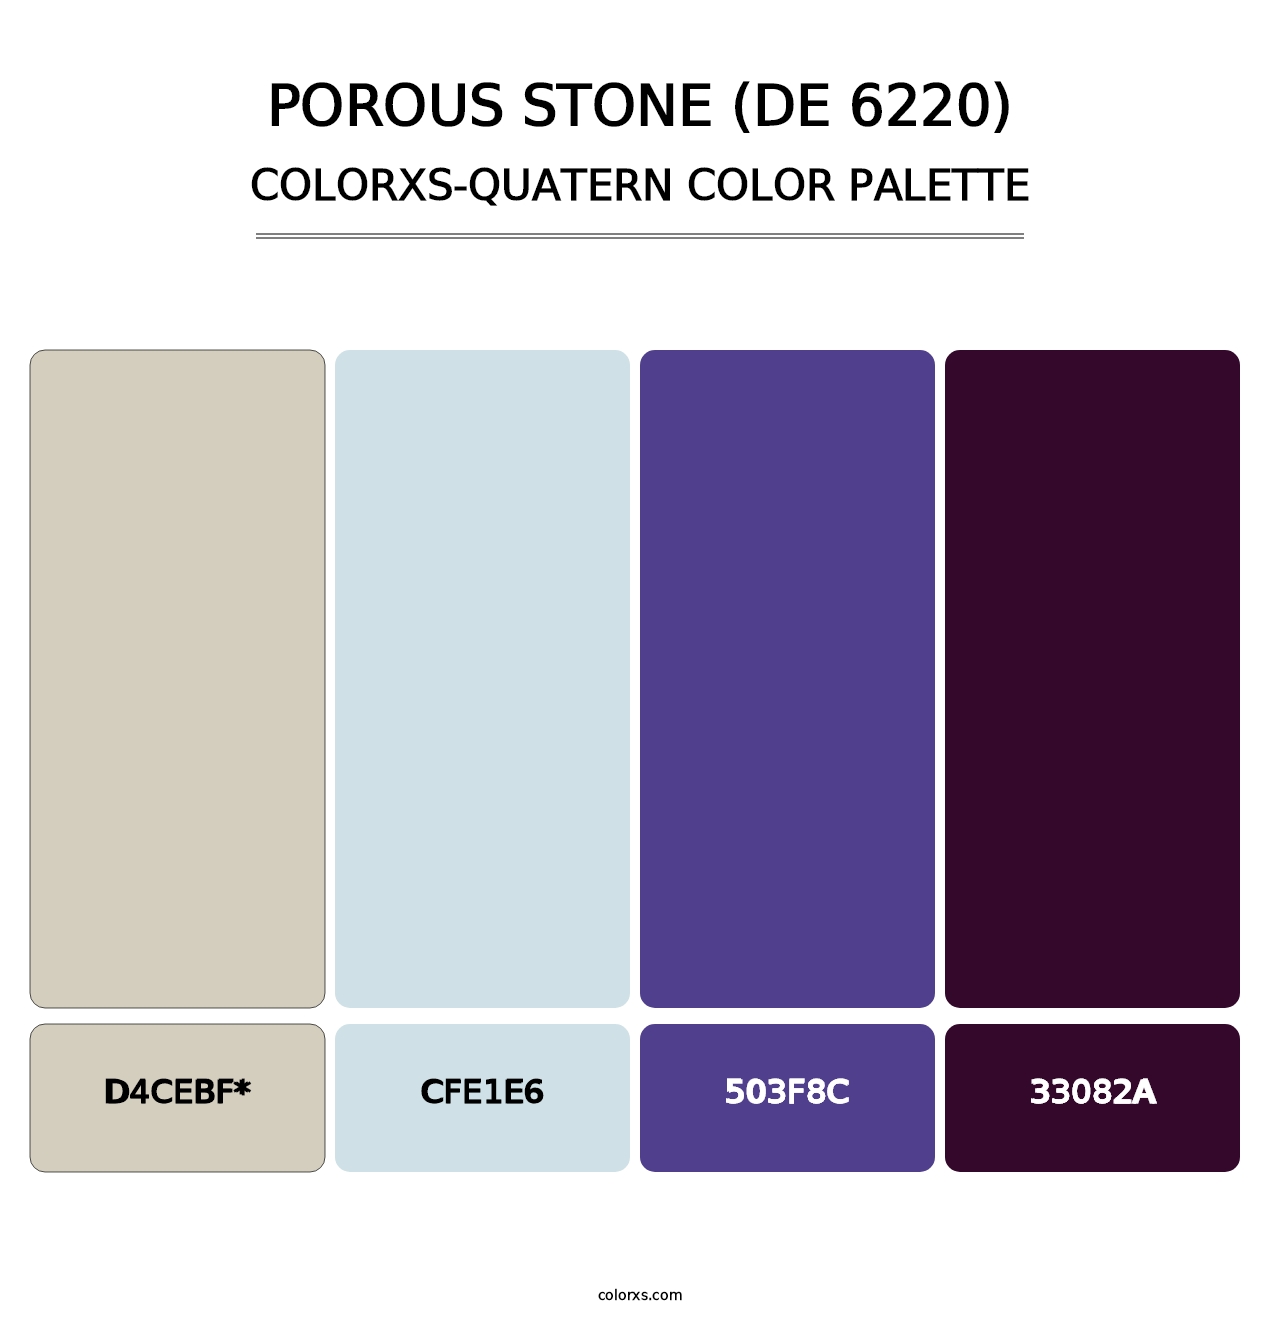 Porous Stone (DE 6220) - Colorxs Quatern Palette